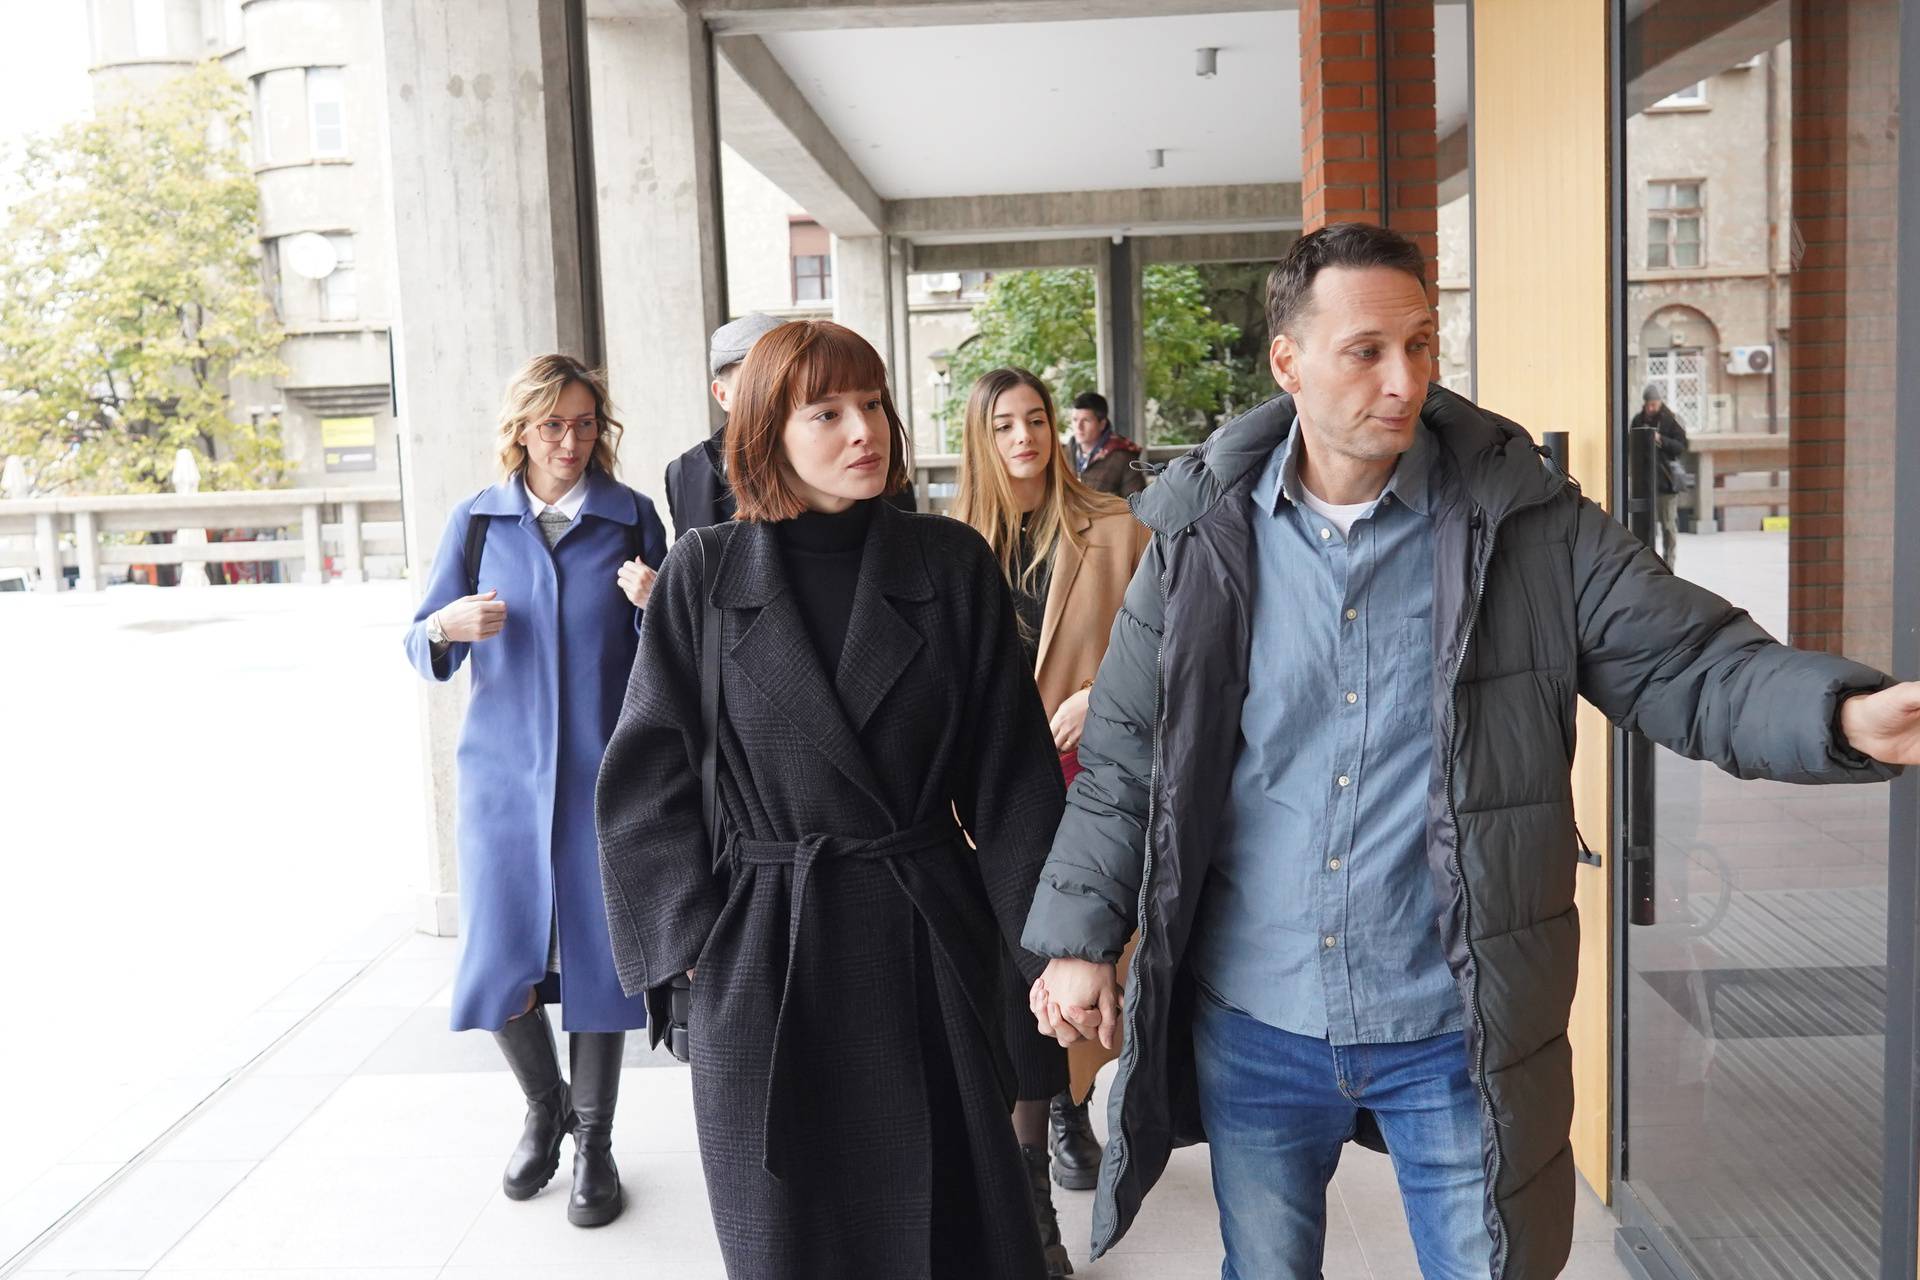 Na Višem sudu u Beogradu nastavljeno je suđenje vlasniku škole glume Miroslavu Aleksiću zbog optužbi za silovanje i seksualno uznemiravanje